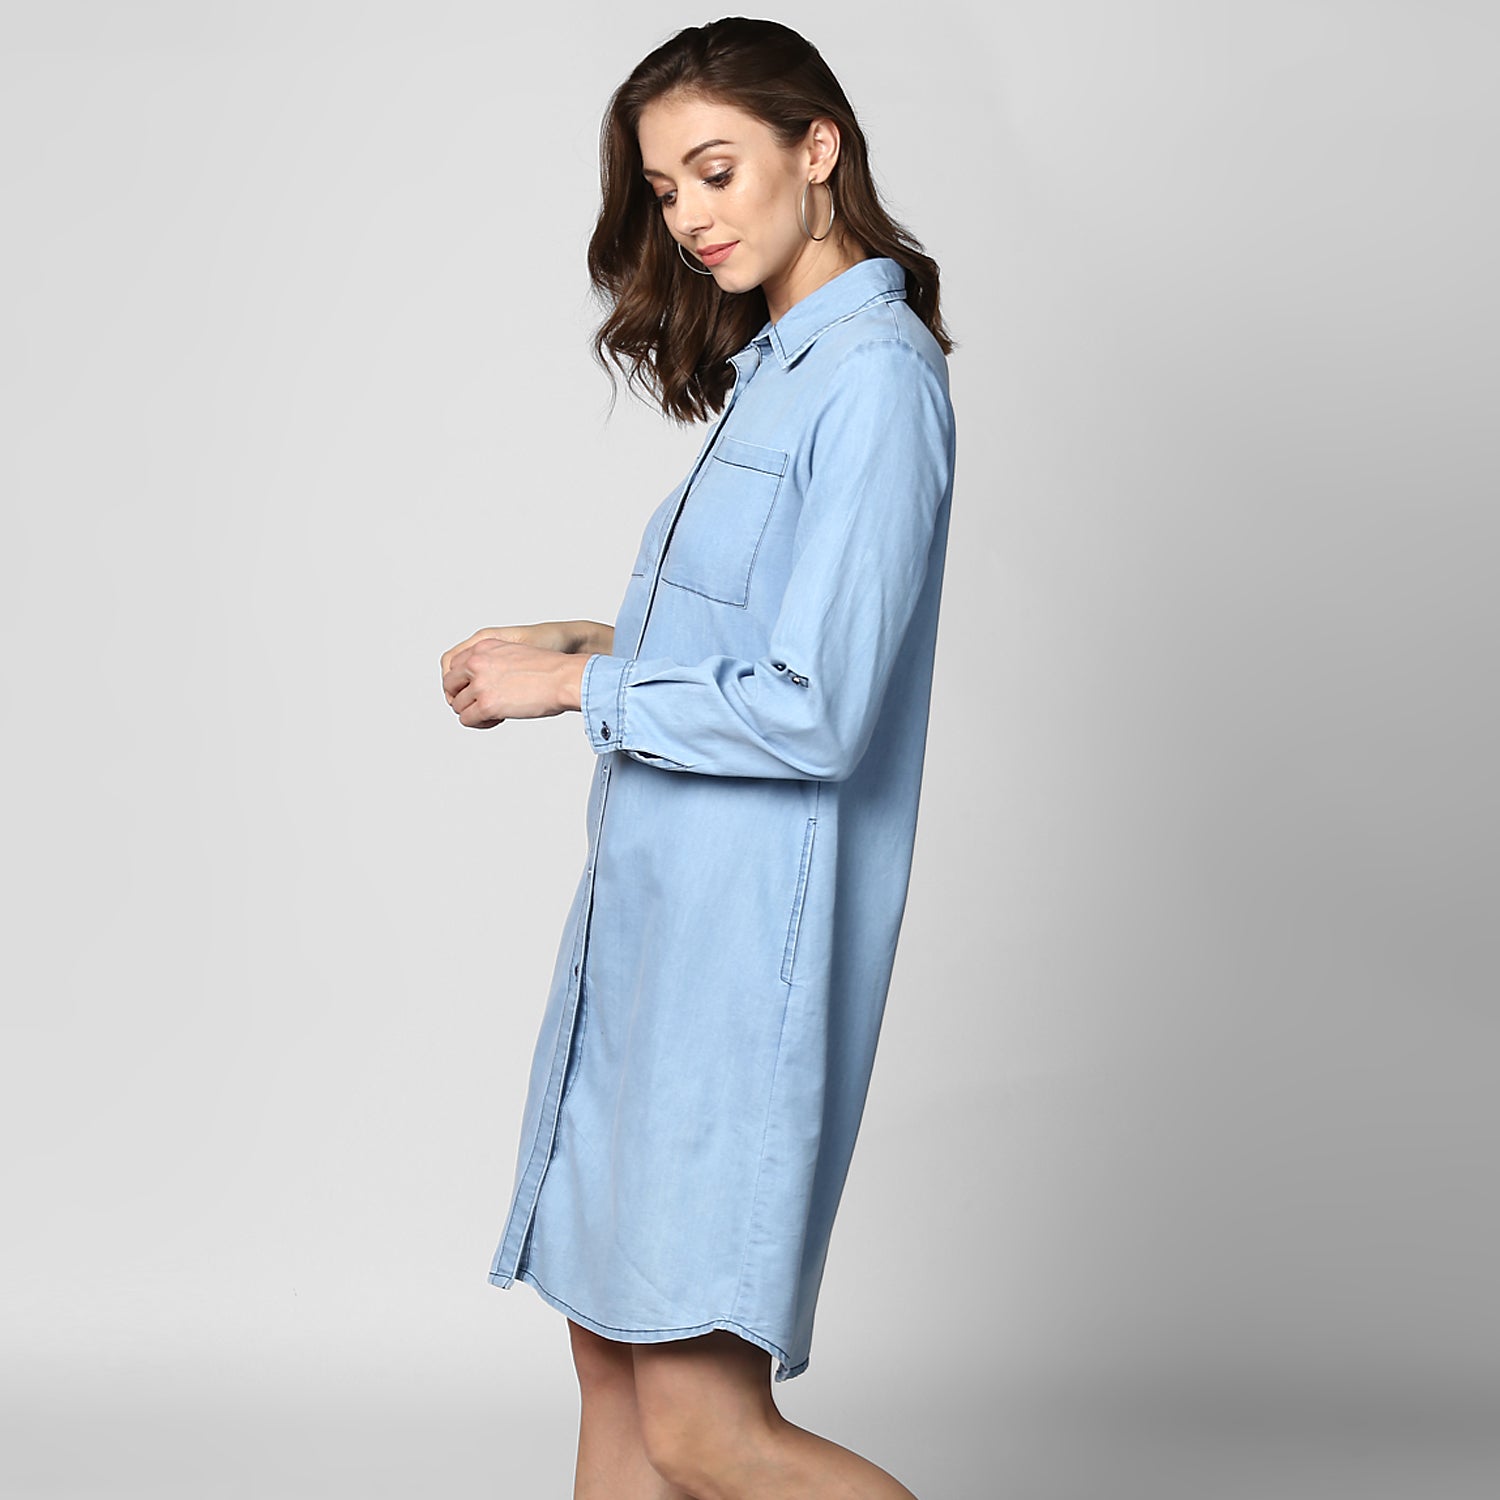 Women's Light Blue Denim Double Pocket Double Flap Dress - StyleStone